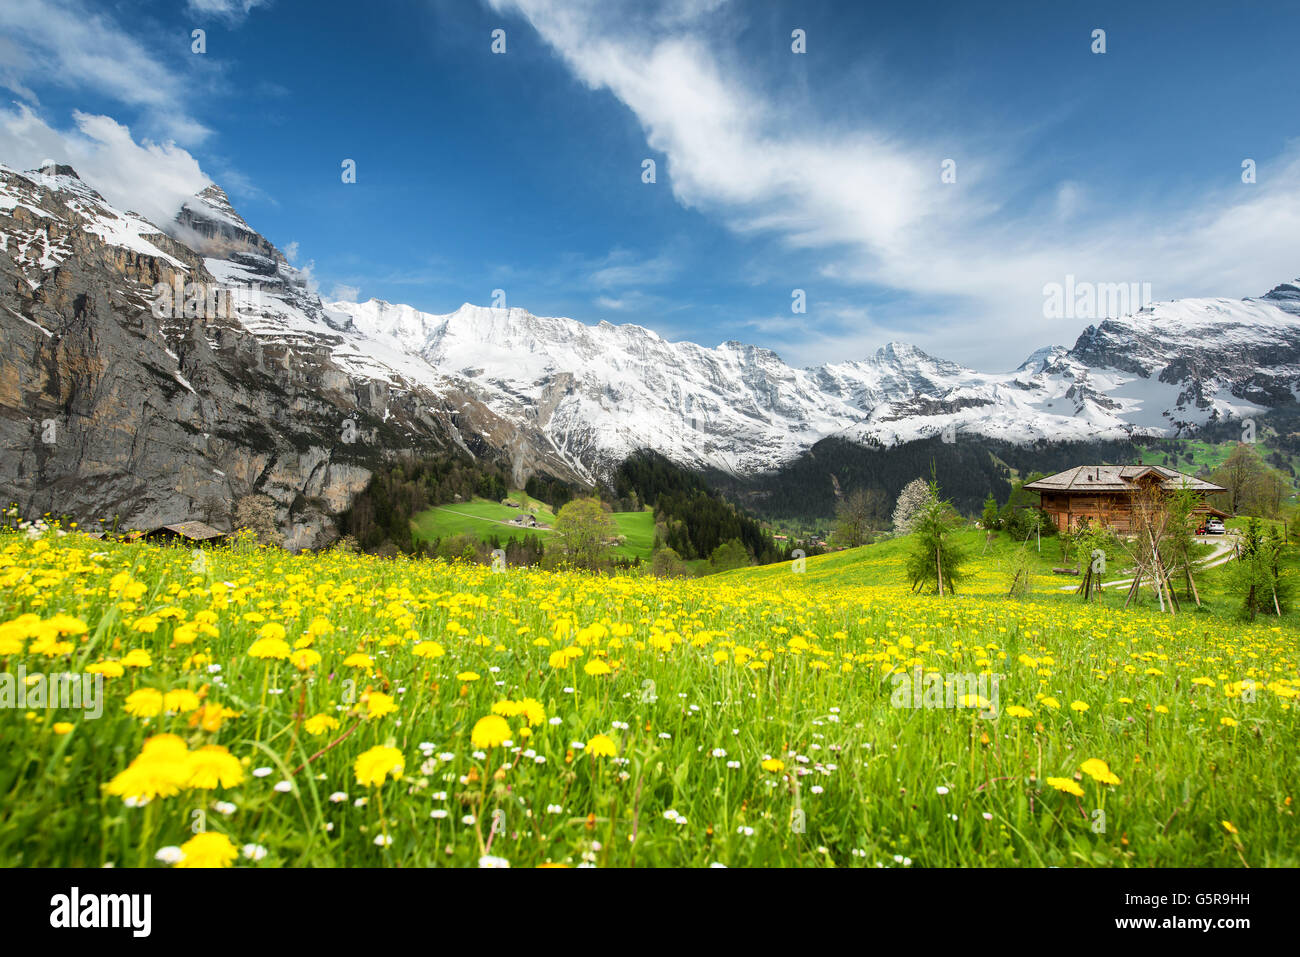 Grindelwald Landschaft, Schweiz - Landschaft der gelben Blumenfelder in der Schweiz. Landschaft mit grünen Wiesen und berühmten stun Stockfoto